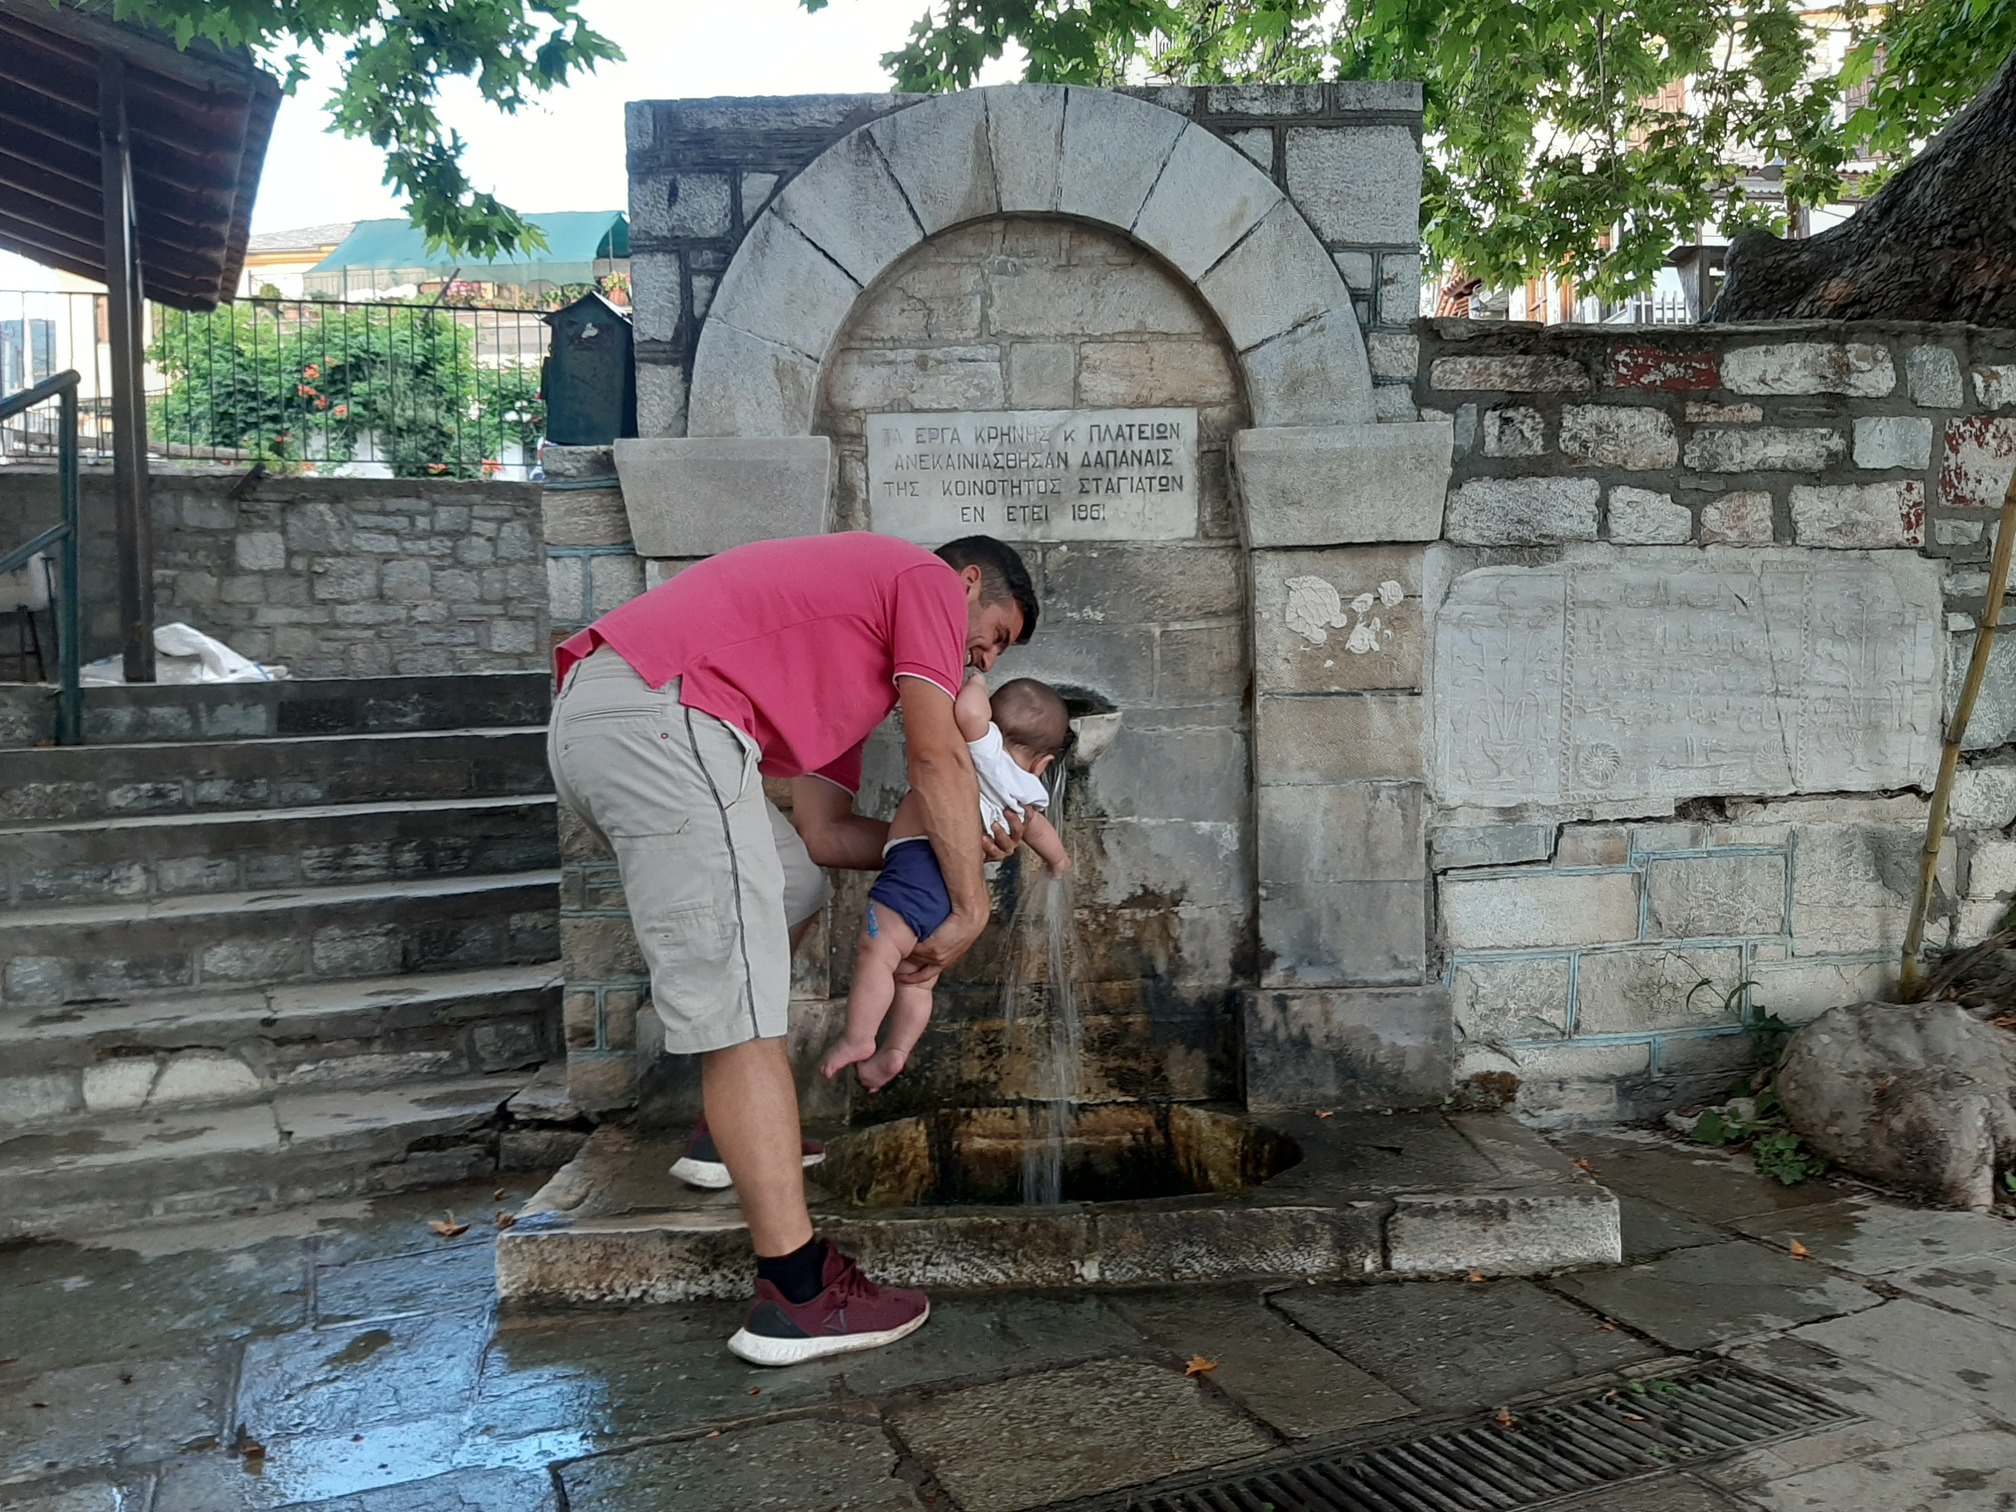 Le fontane pubbliche dove gli abitanti prendono l'acqua, le uniche rimaste collegate alla sorgente del villaggio